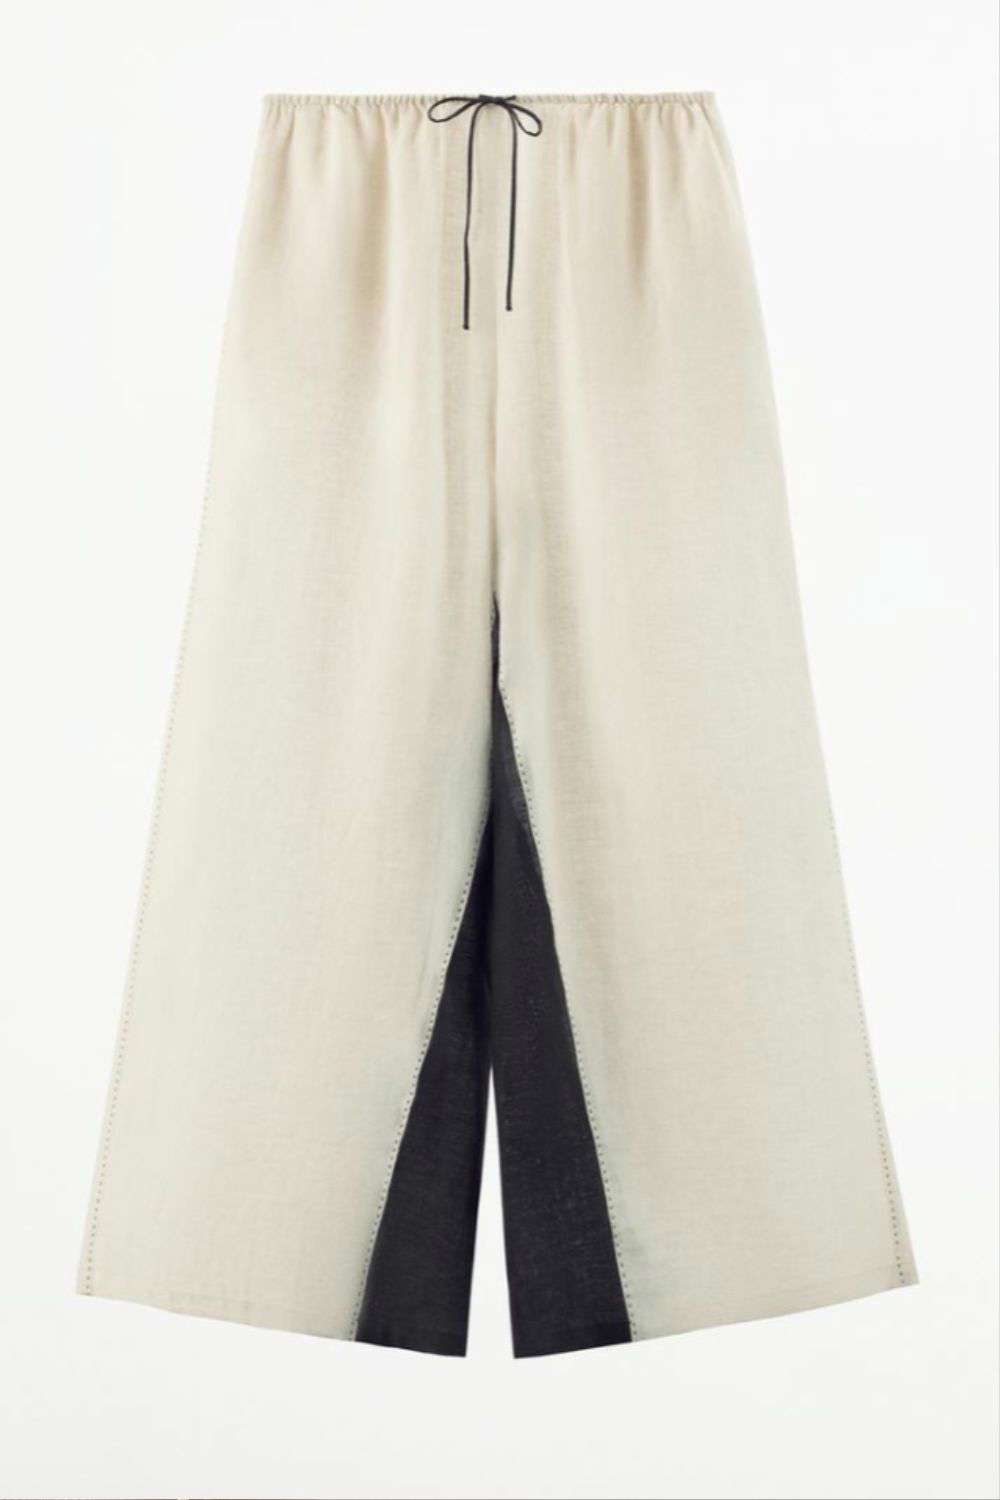 Pantalon de lino bicolor